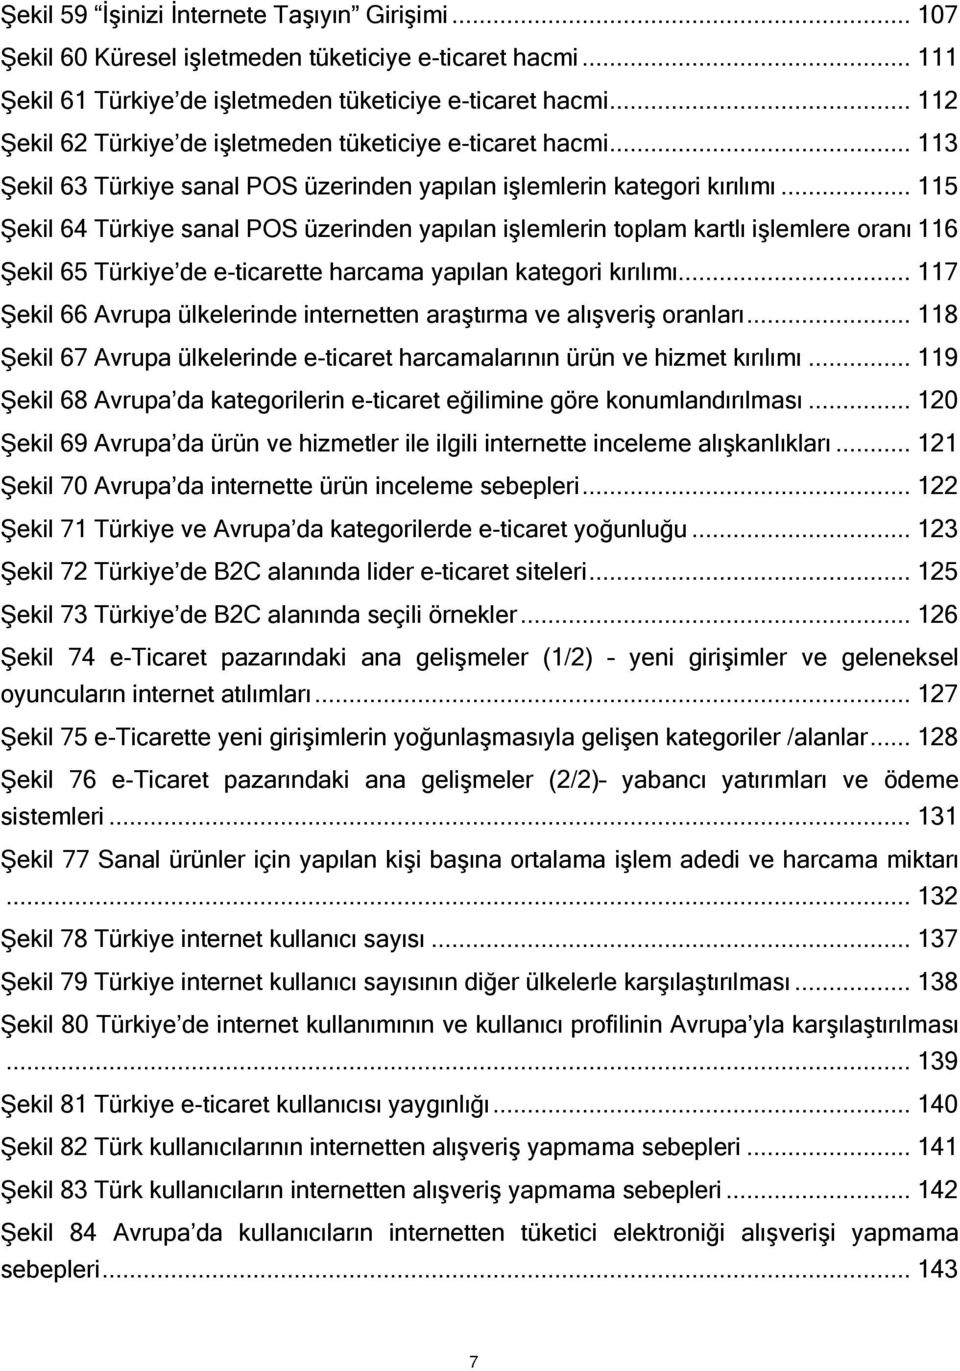 .. 115 Şekil 64 Türkiye sanal POS üzerinden yapılan işlemlerin toplam kartlı işlemlere oranı 116 Şekil 65 Türkiye de e-ticarette harcama yapılan kategori kırılımı.